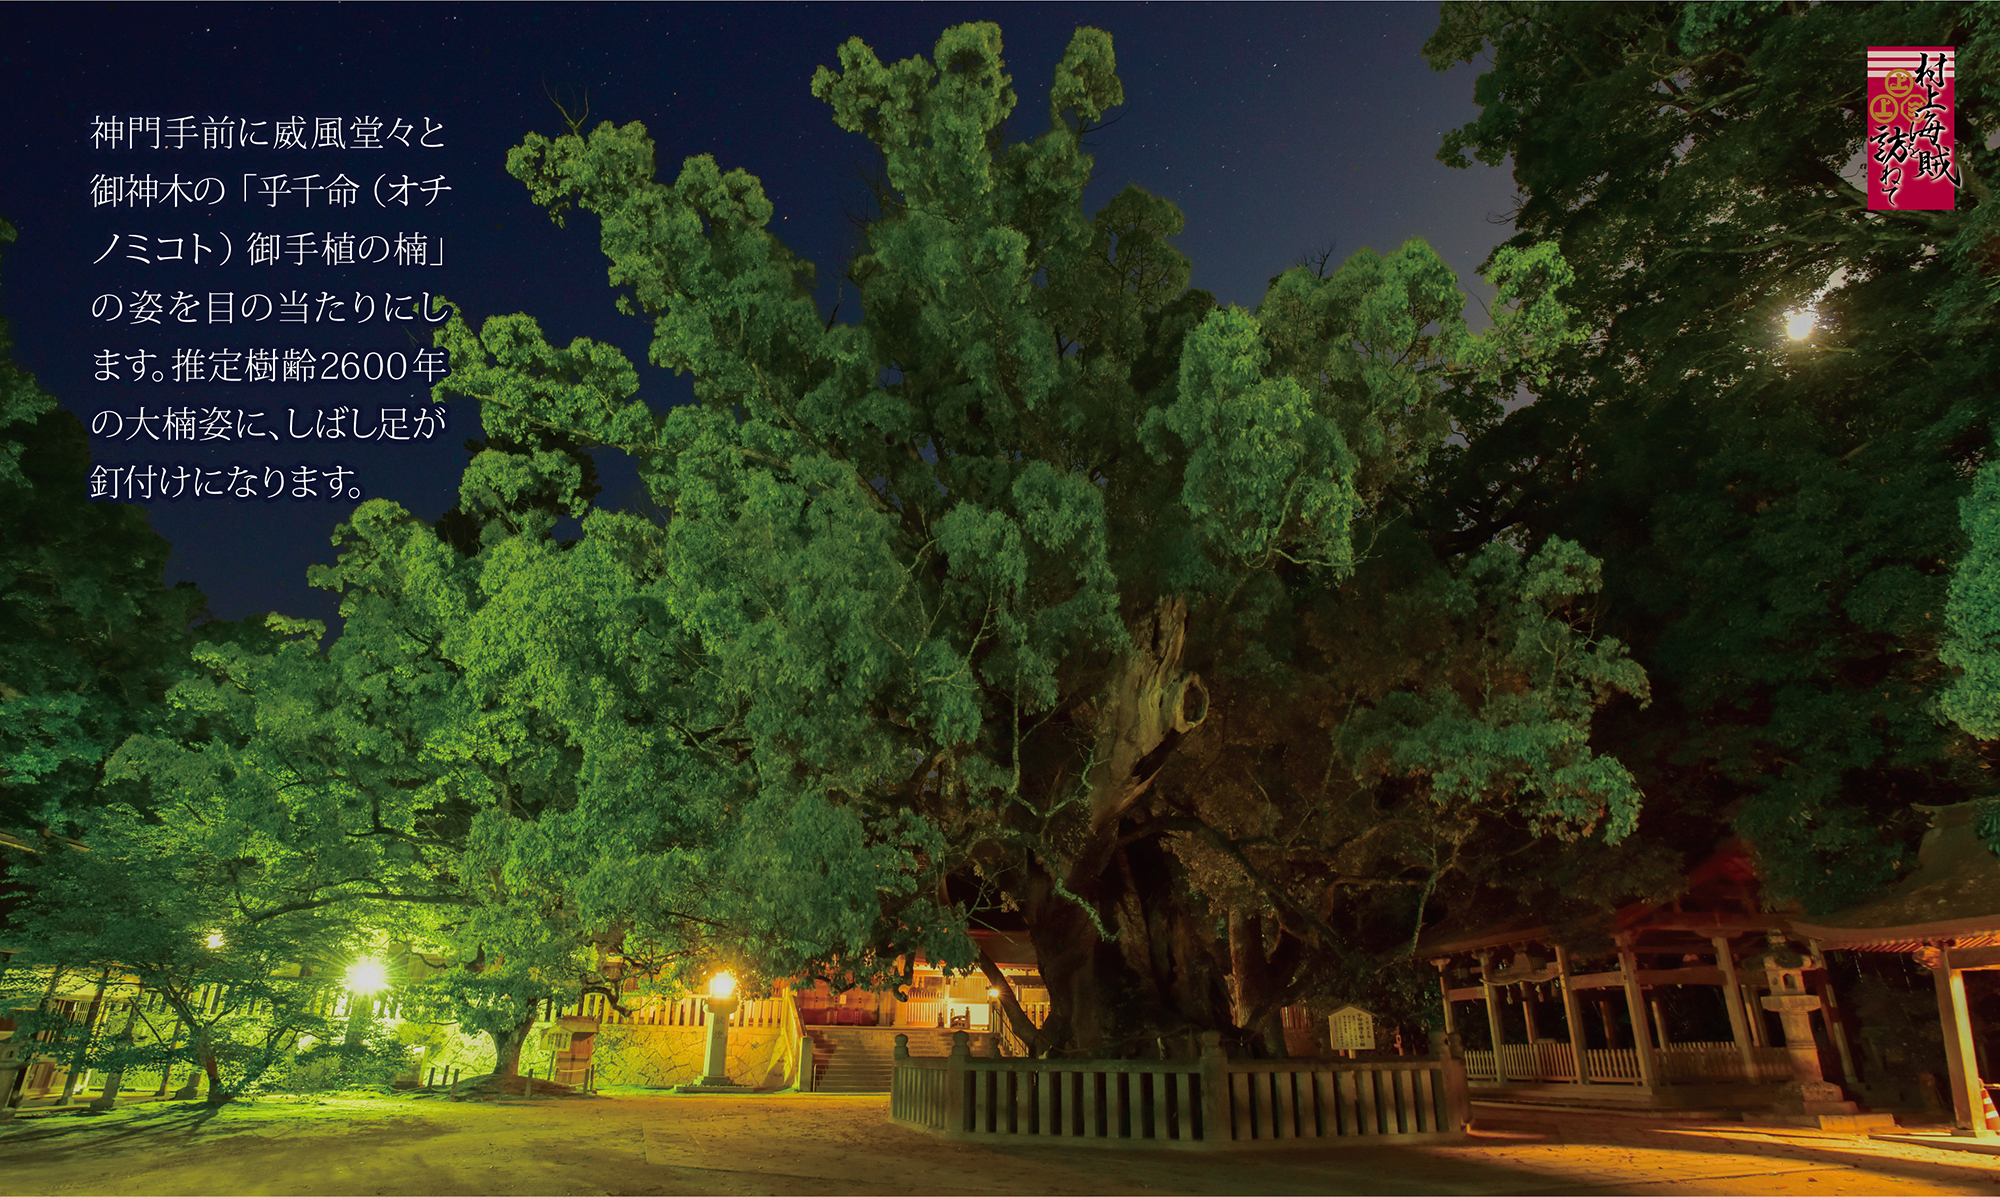 大三島大山祇神社の御神木は樹齢2600年